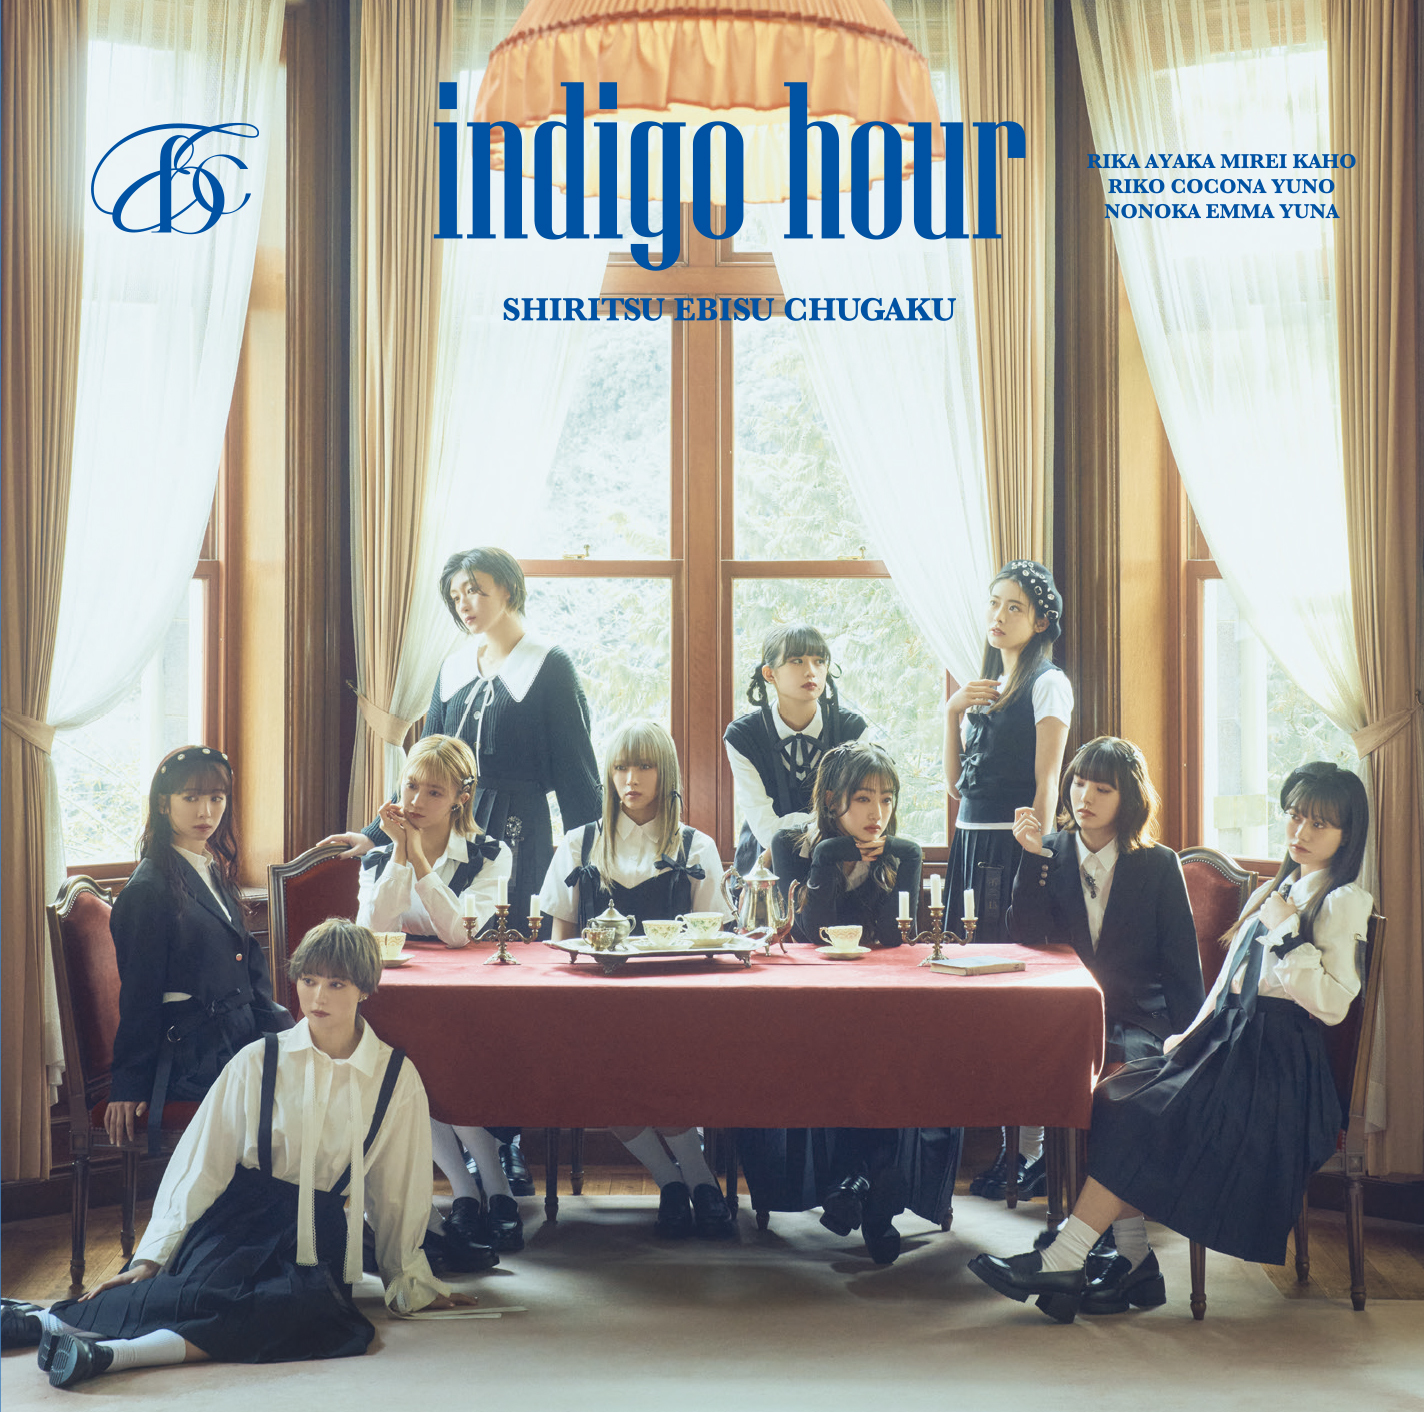 私立恵比寿中学 8thアルバム『indigo hour』通常盤